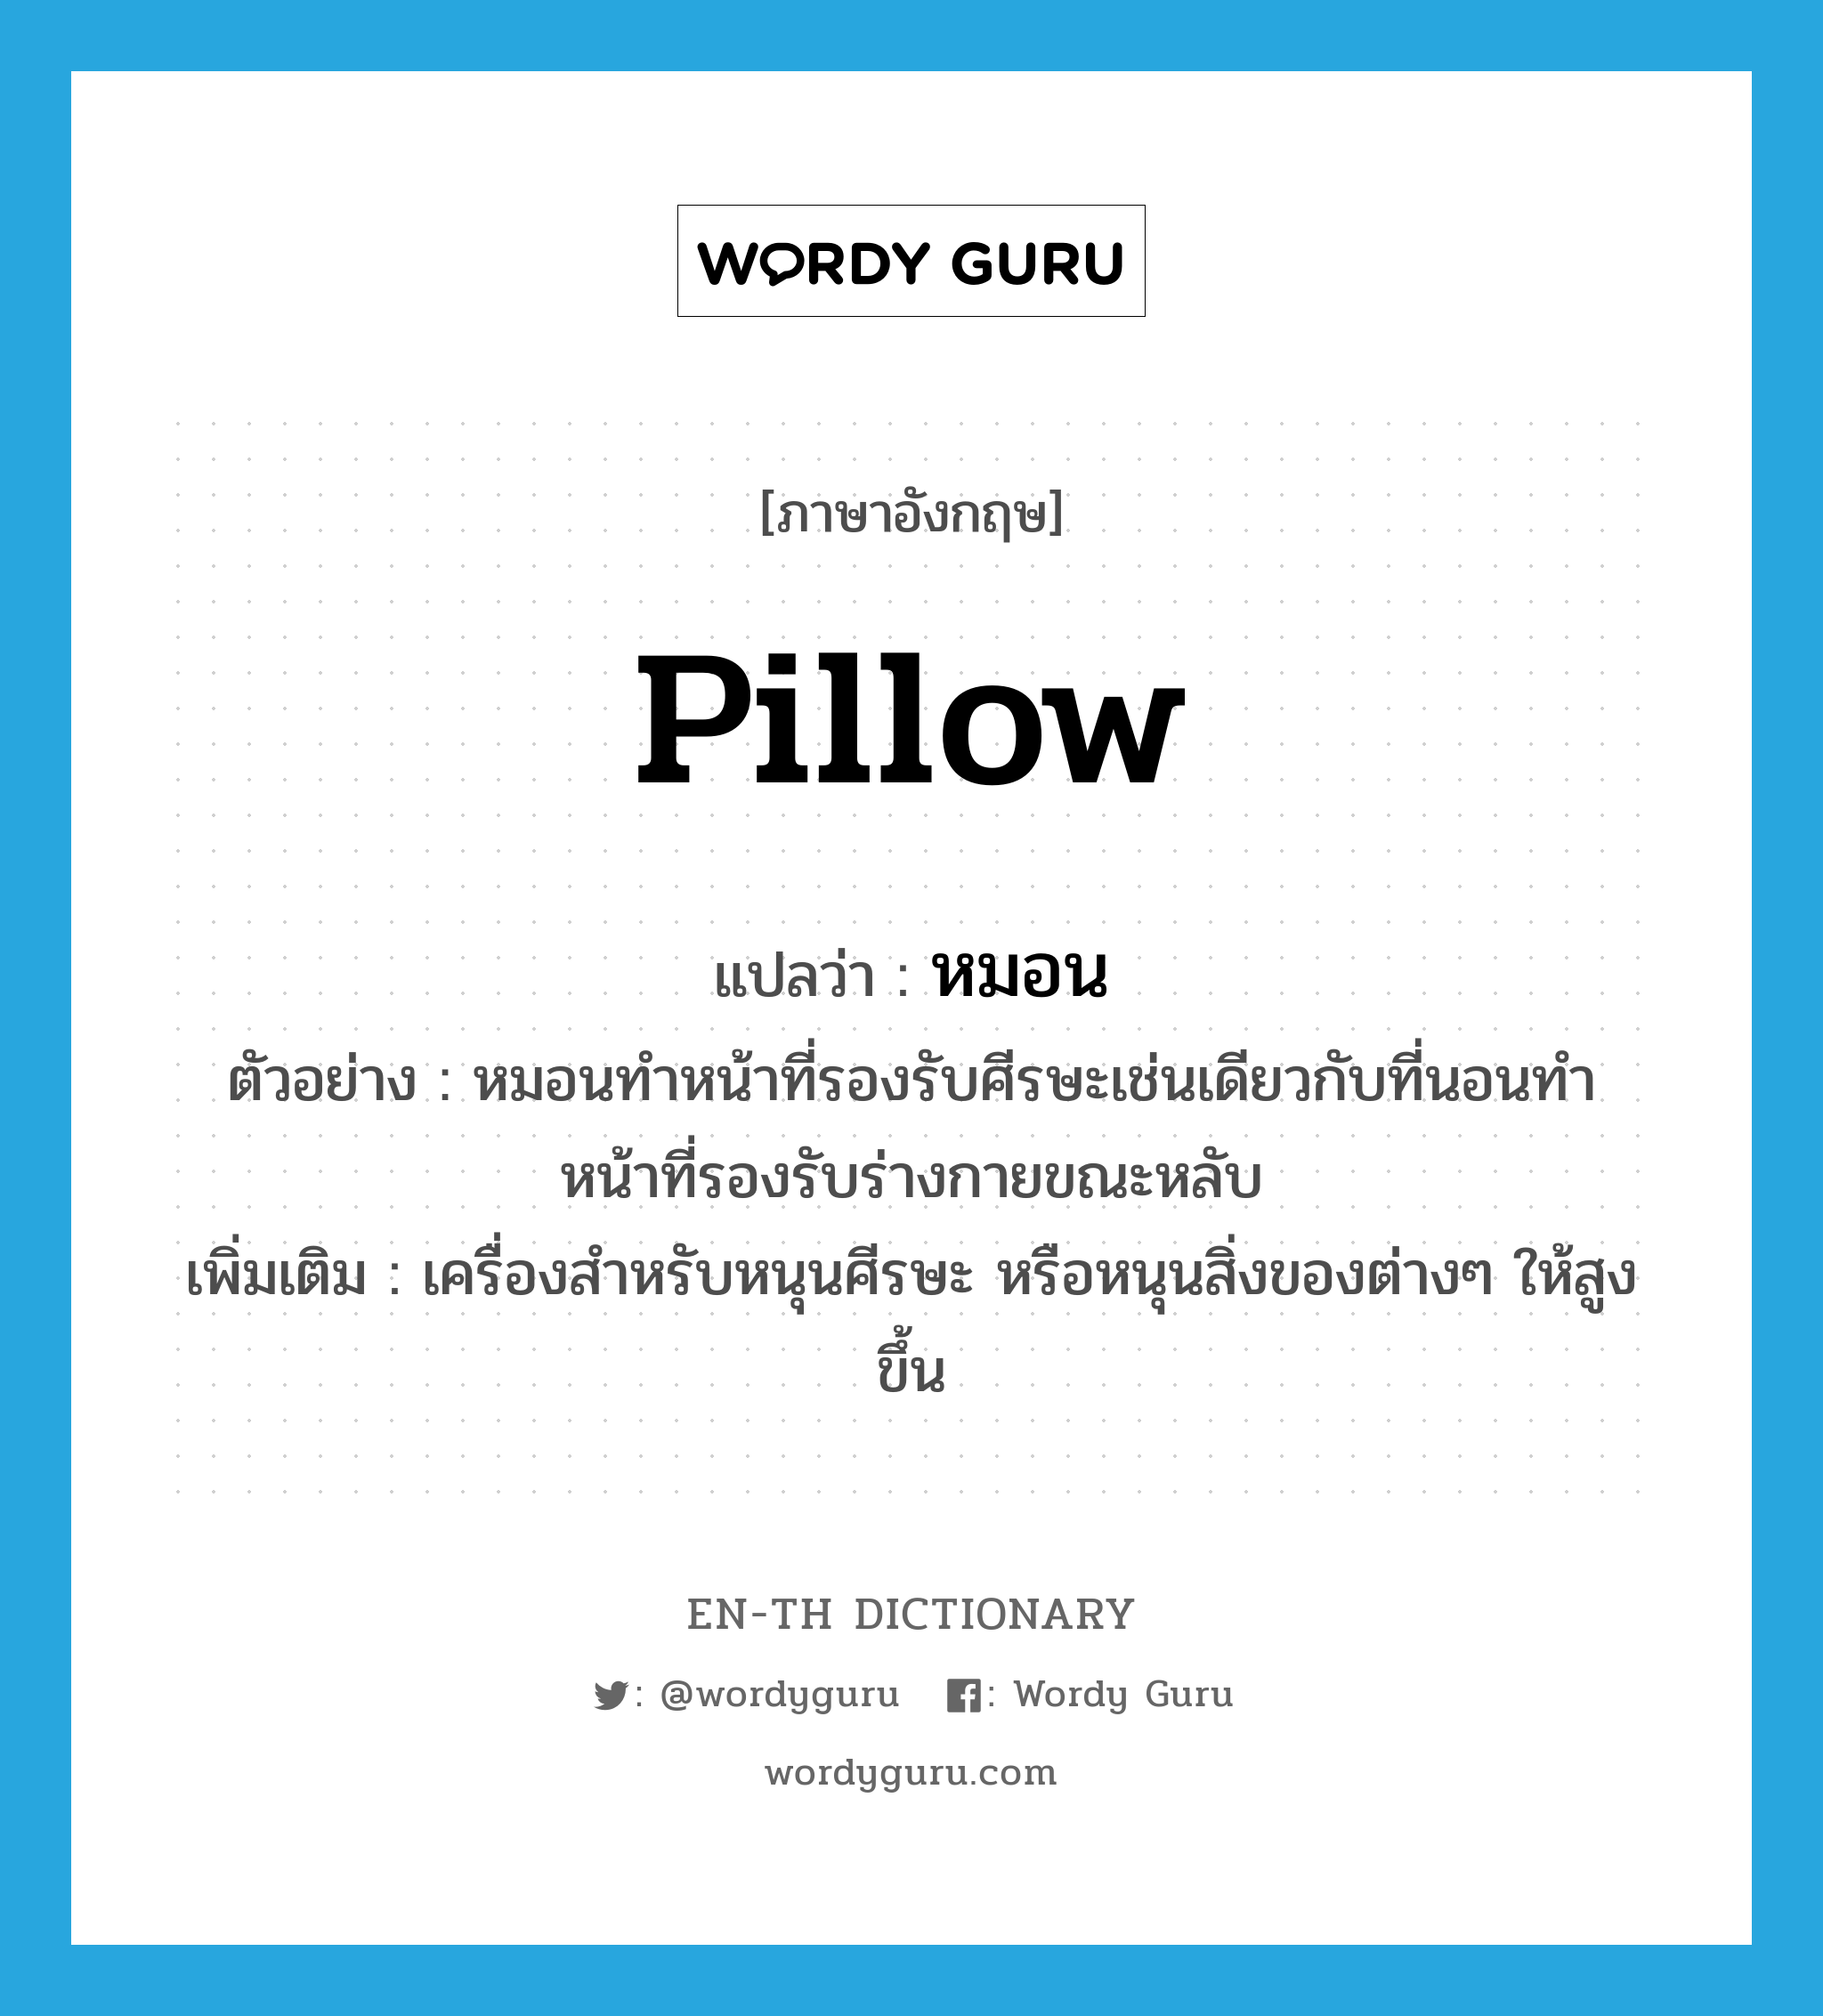 pillow แปลว่า?, คำศัพท์ภาษาอังกฤษ pillow แปลว่า หมอน ประเภท N ตัวอย่าง หมอนทำหน้าที่รองรับศีรษะเช่นเดียวกับที่นอนทำหน้าที่รองรับร่างกายขณะหลับ เพิ่มเติม เครื่องสำหรับหนุนศีรษะ หรือหนุนสิ่งของต่างๆ ให้สูงขึ้น หมวด N